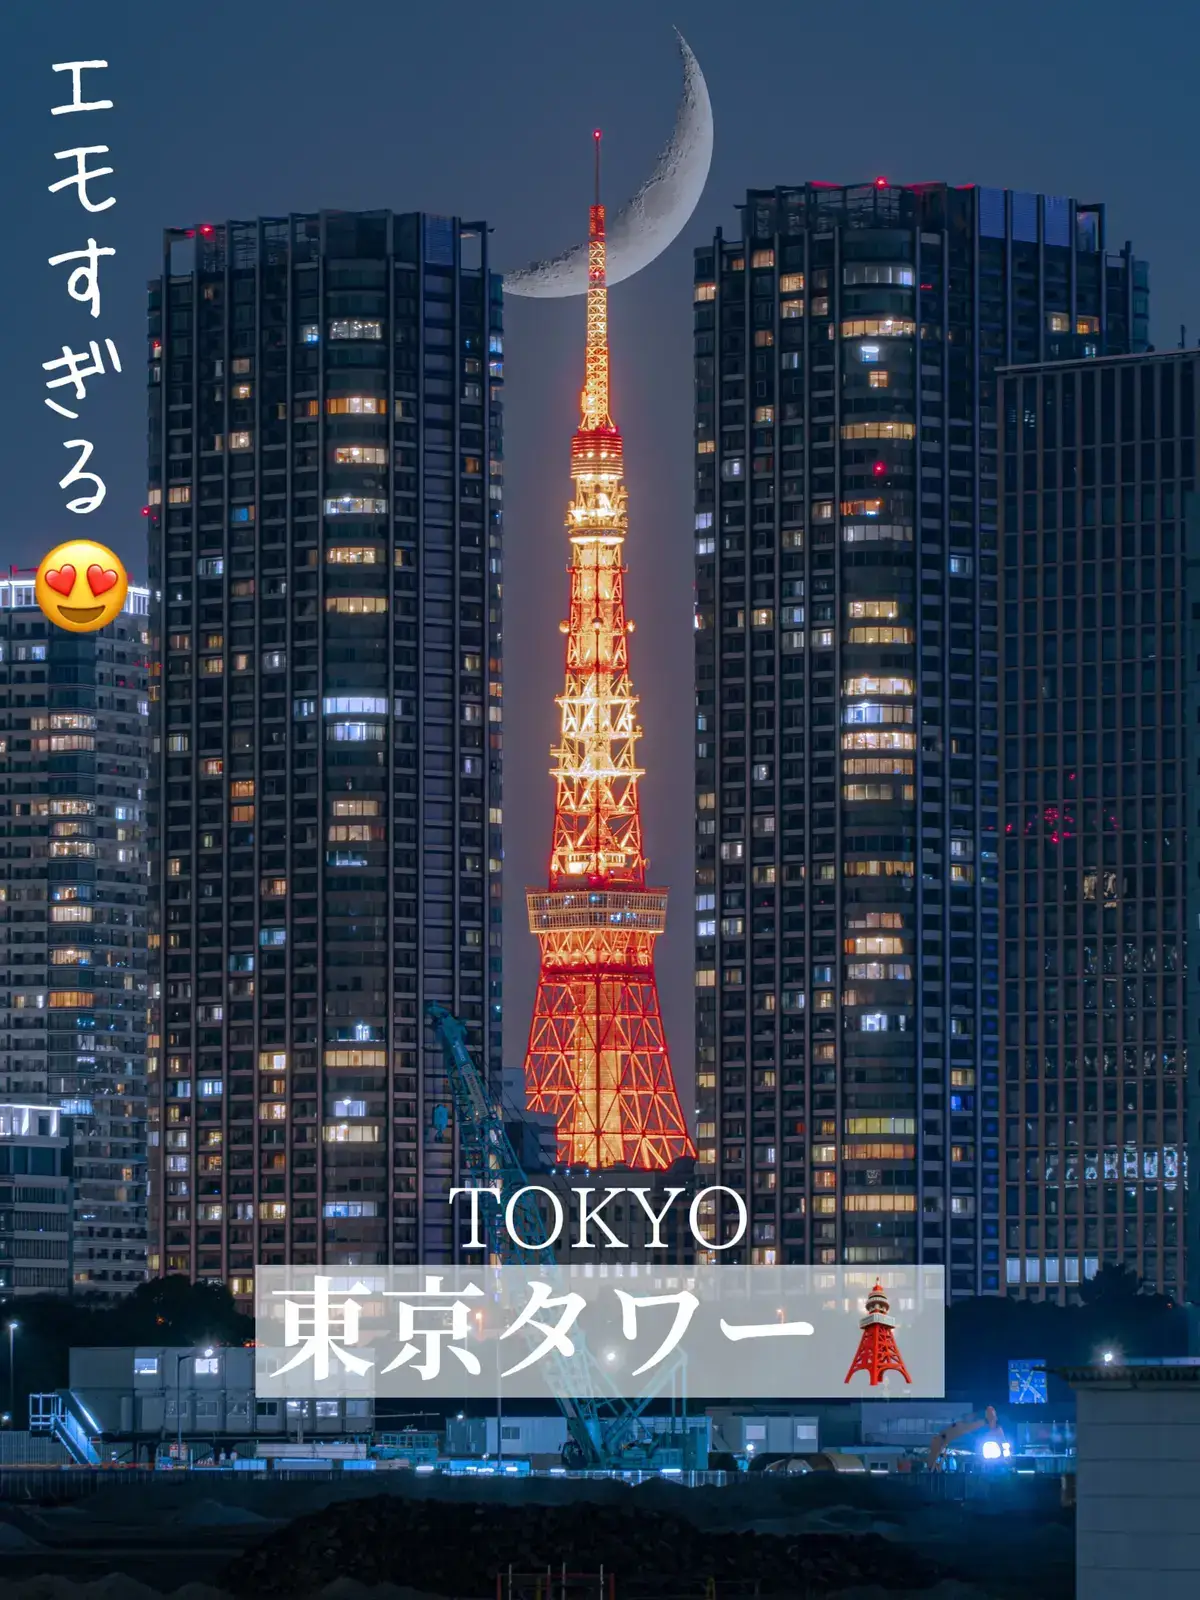 『東京タワー🗼』ビルのサンドウィッチ、三日月を添えて🌙の画像 (1枚目)